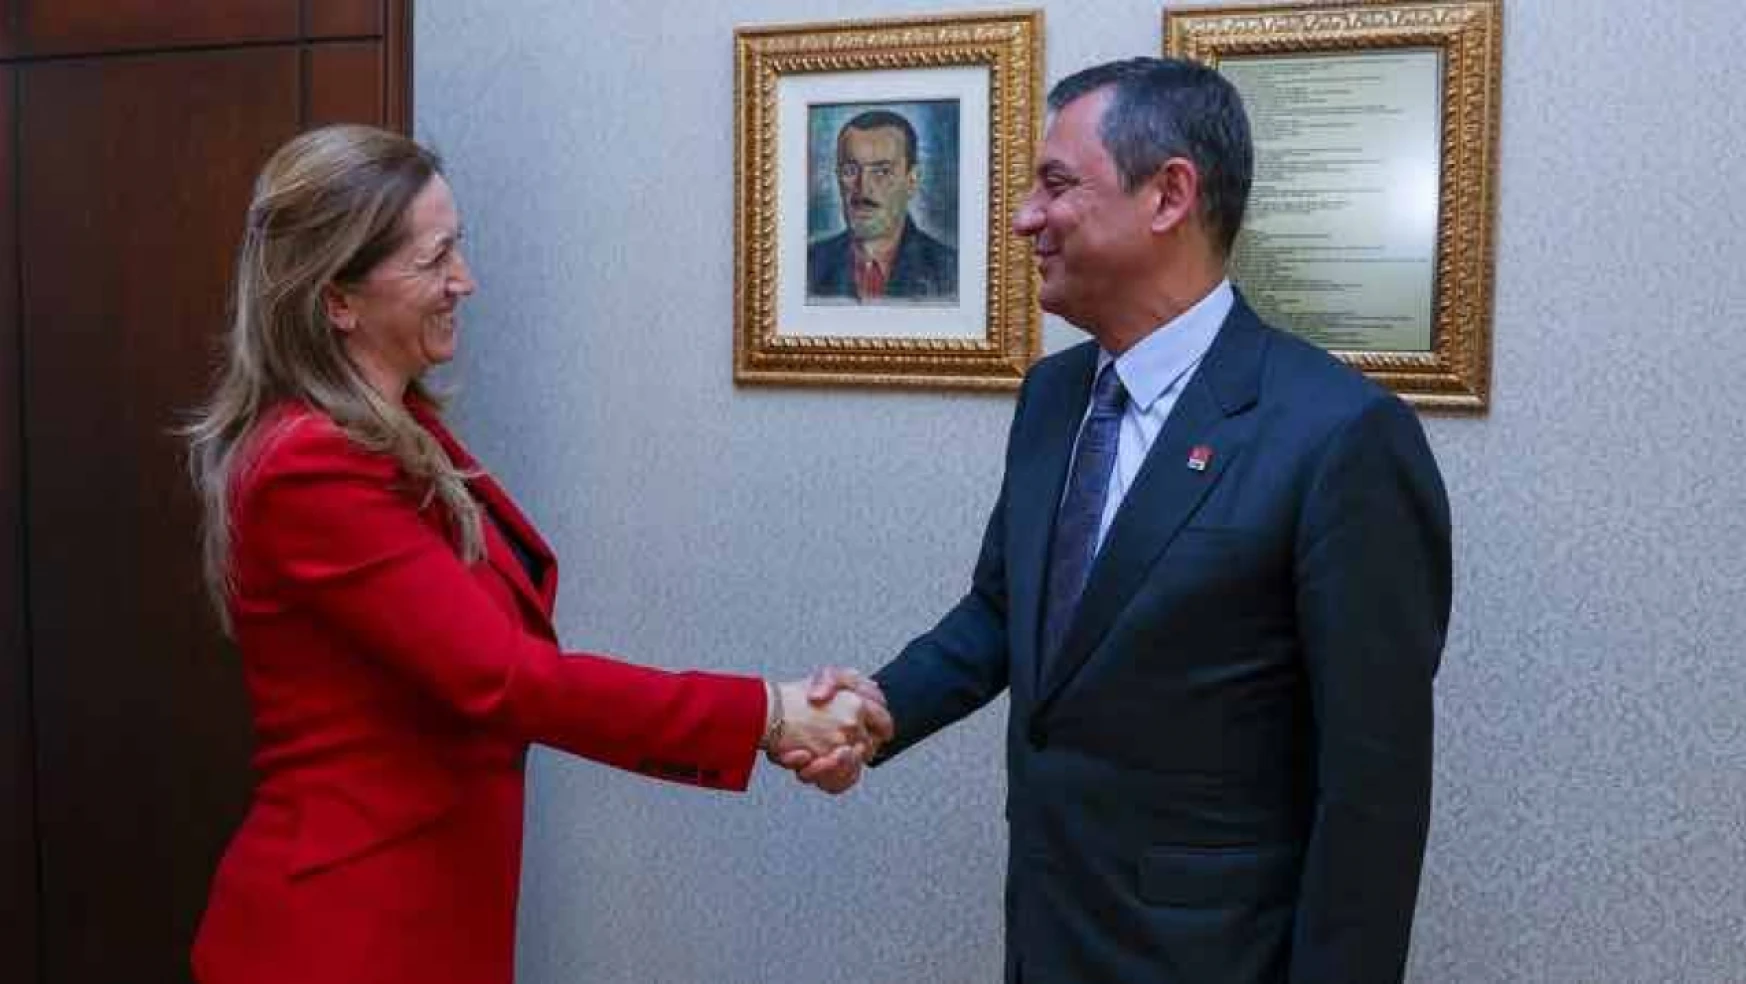 Özgür Özel, DİSK Genel Başkanı Arzu Çerkezoğlu ile bir araya geldi